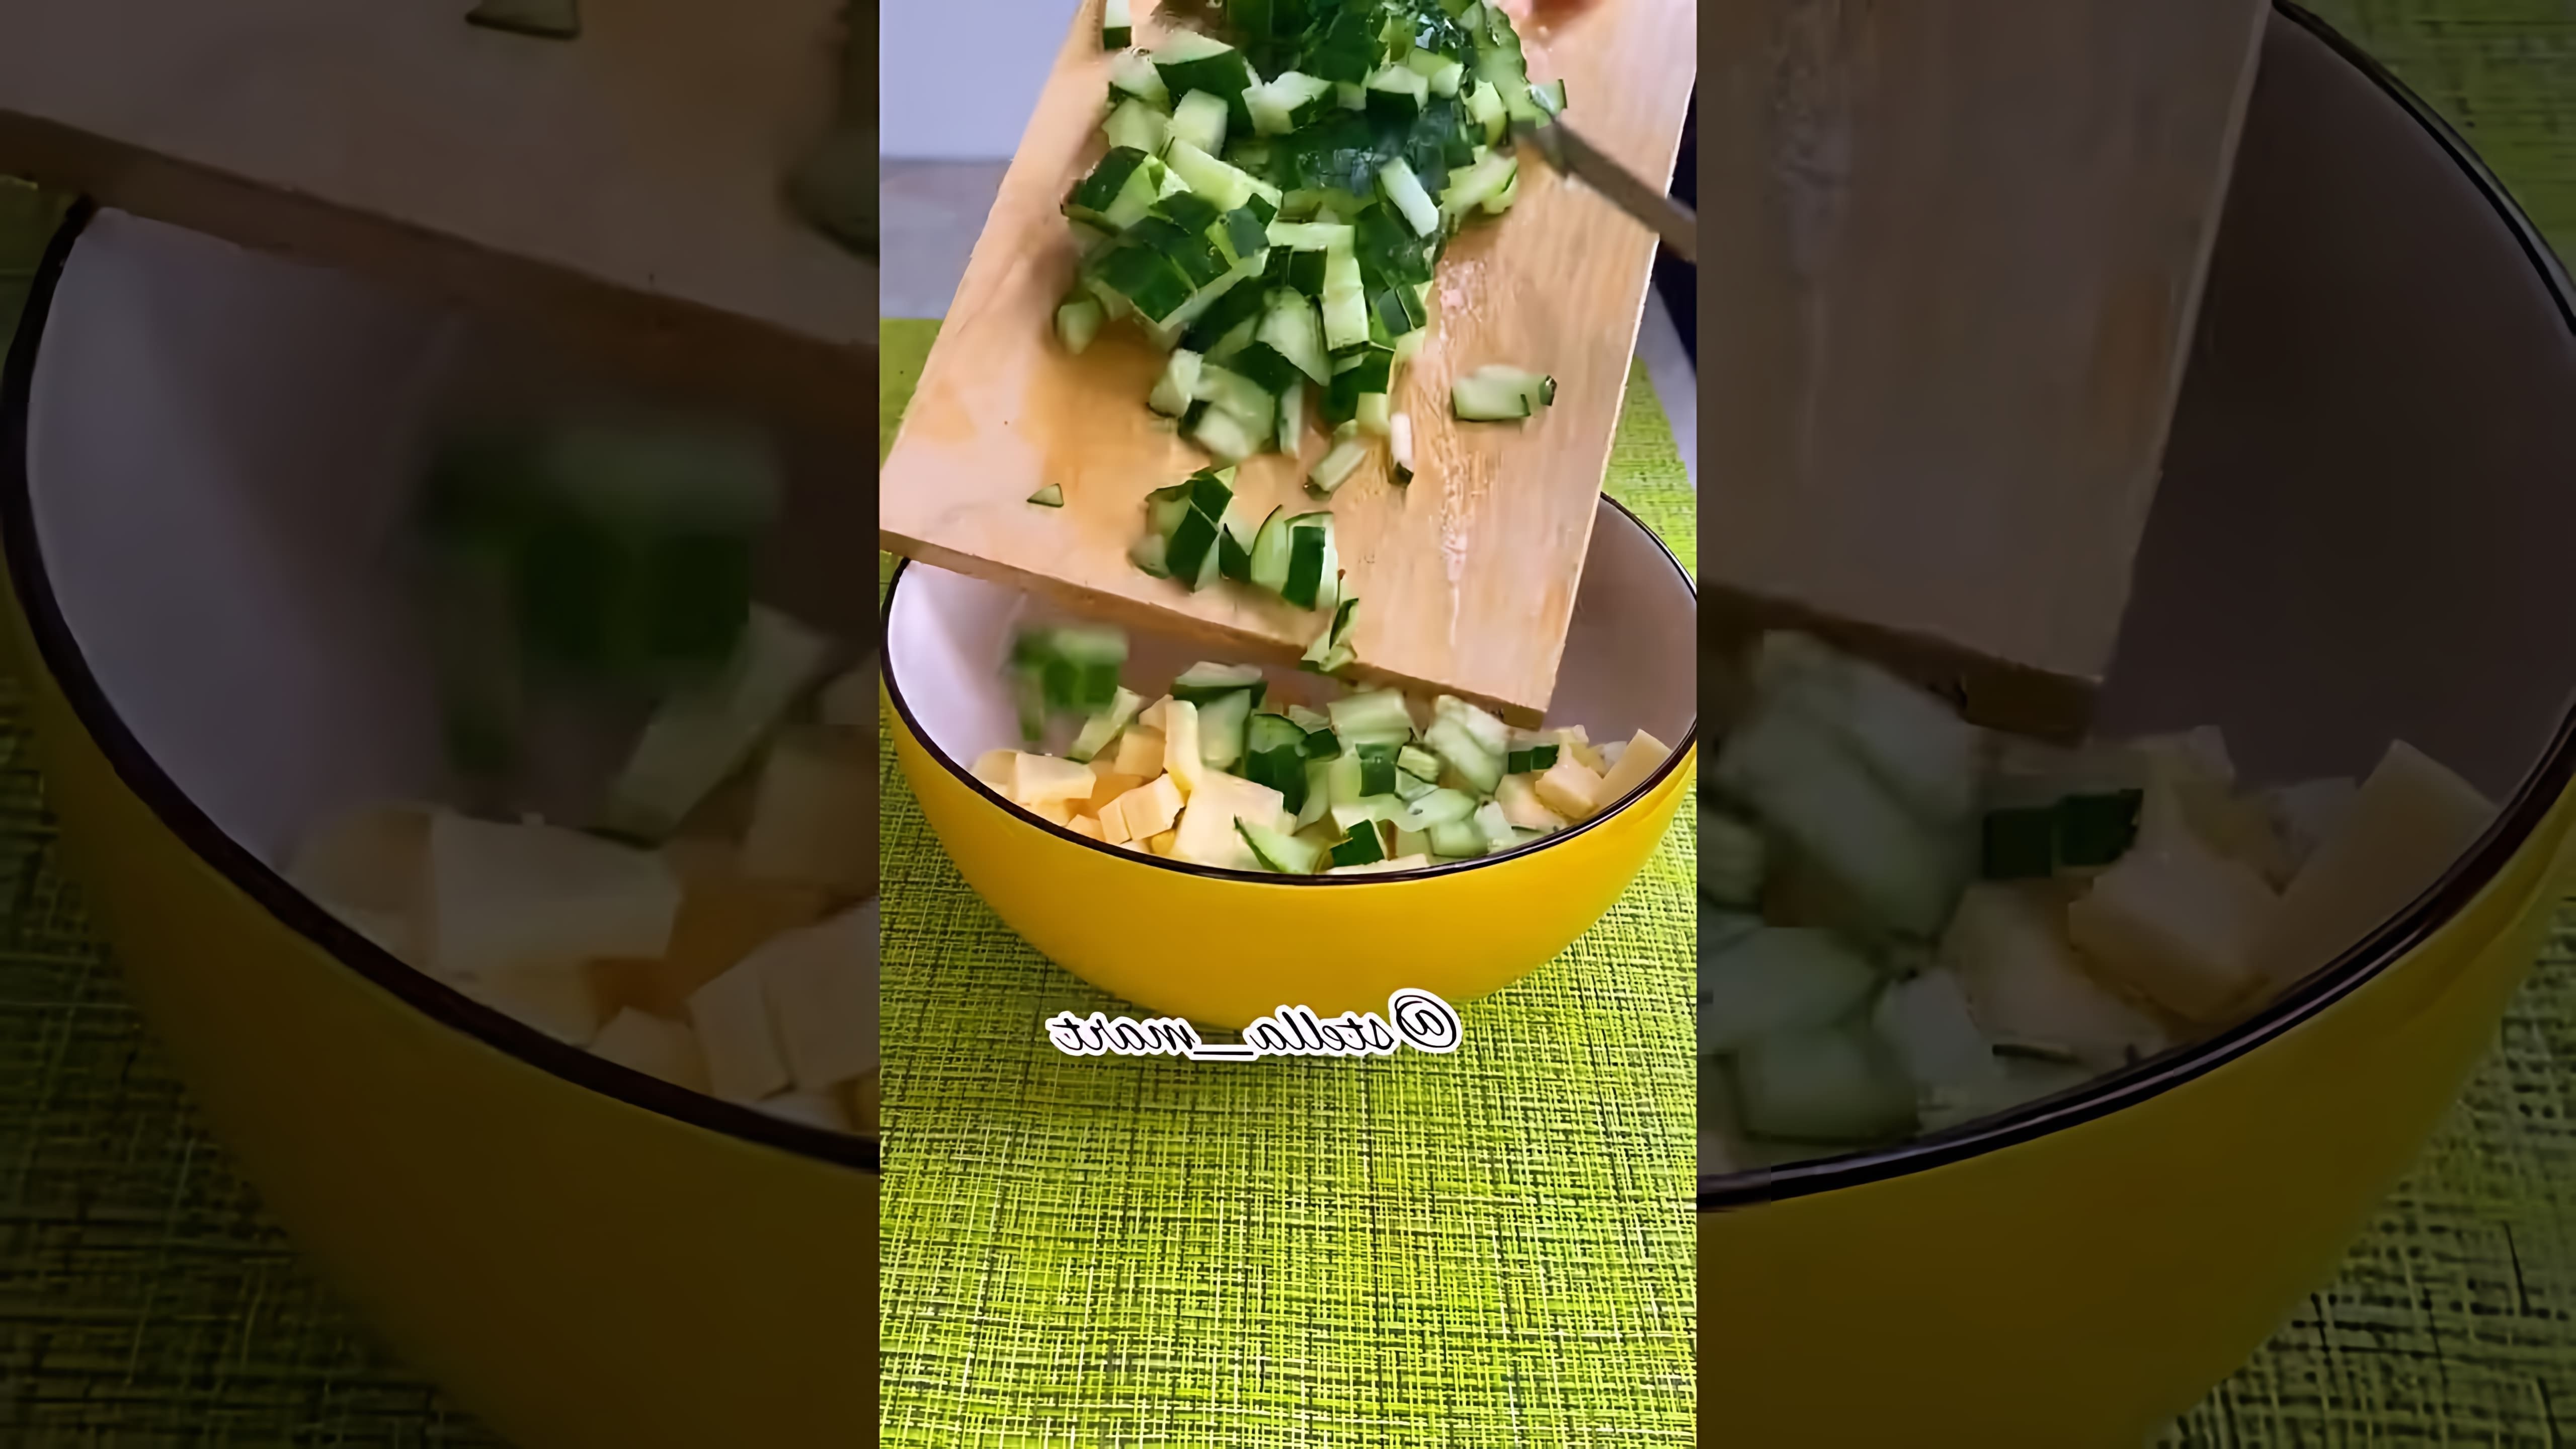 В этом видео демонстрируется процесс приготовления салата с кукурузой